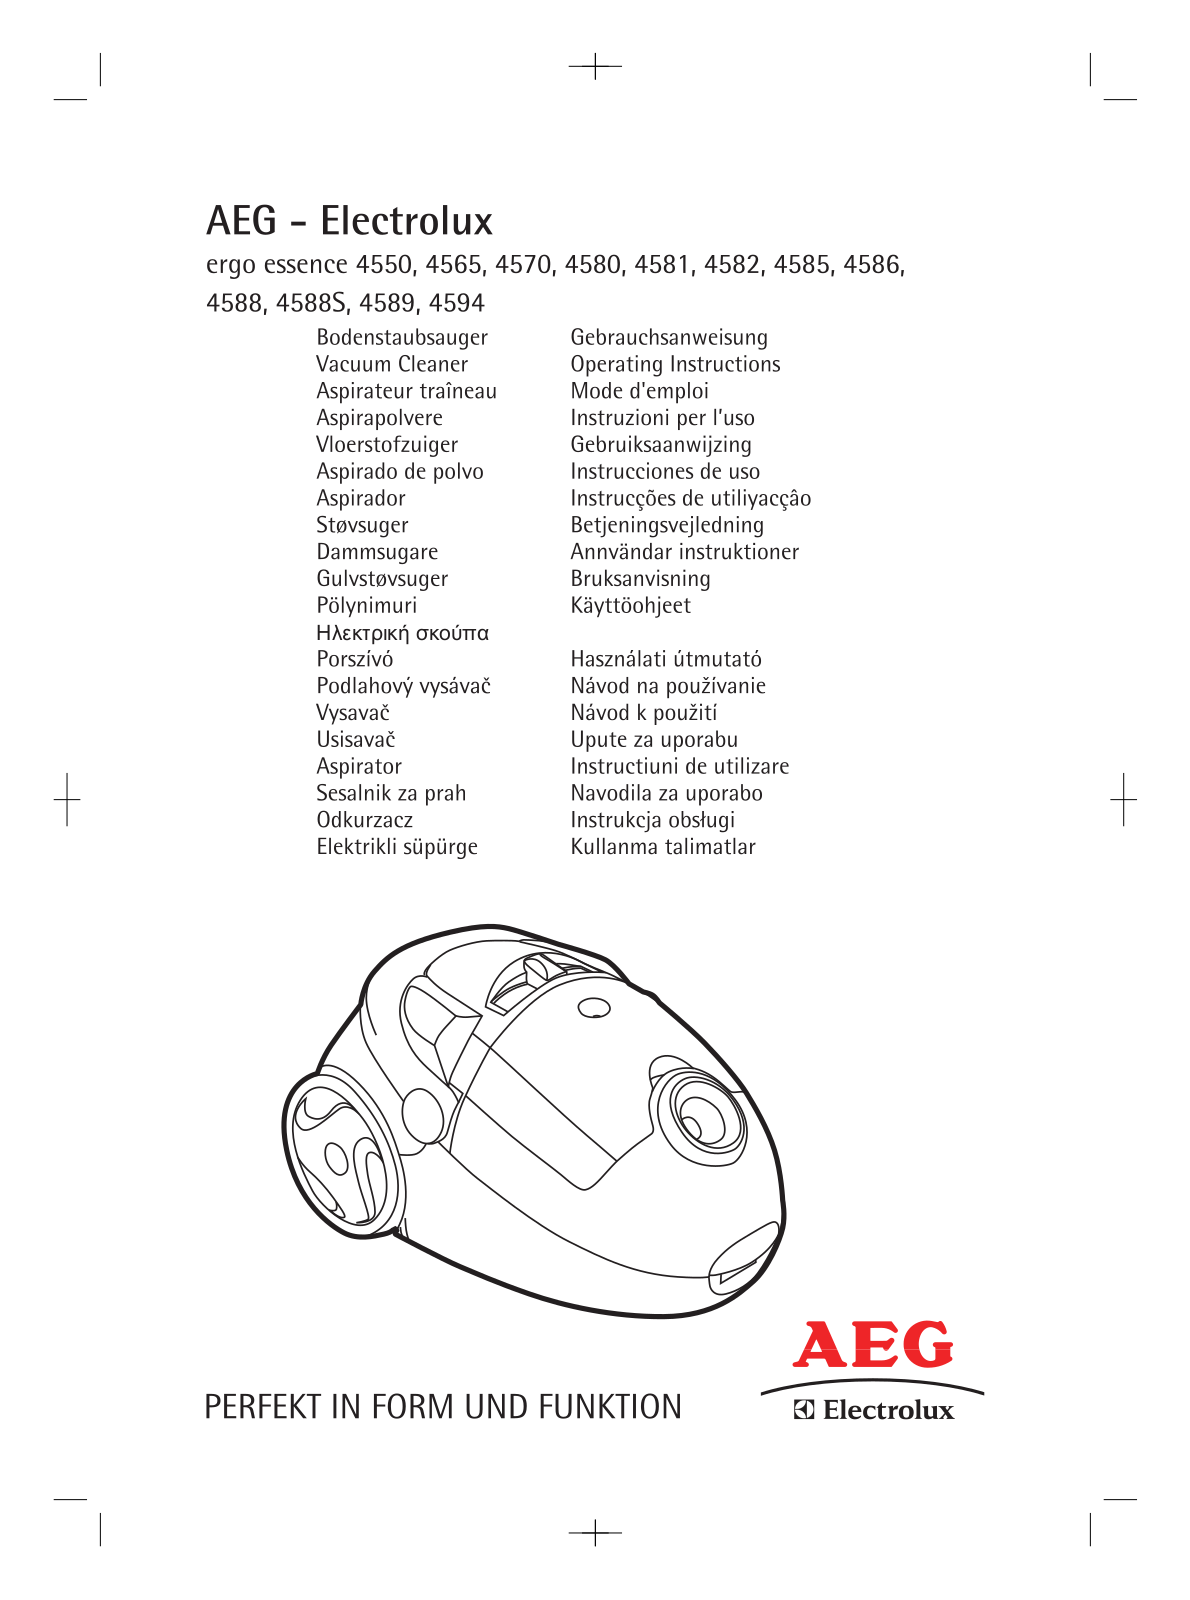 AEG ergo essence 4550, ergo essence 4565, ergo essence 4570, ergo essence 4580, ergo essence 4581 User Manual